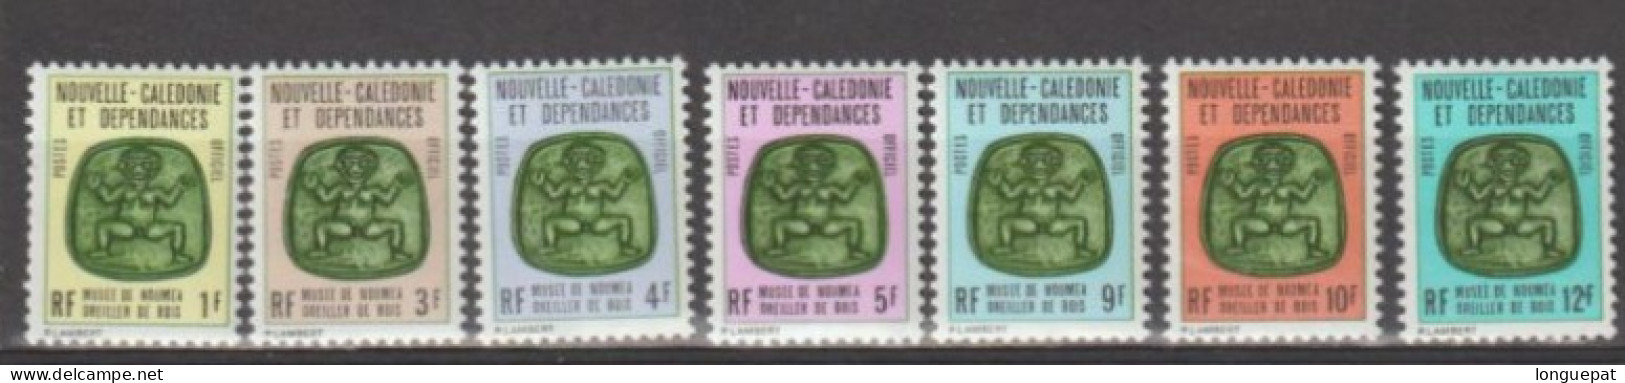 Nle Calédonie : Oreillers De Bois (Musée De Nouméa) - Oficiales